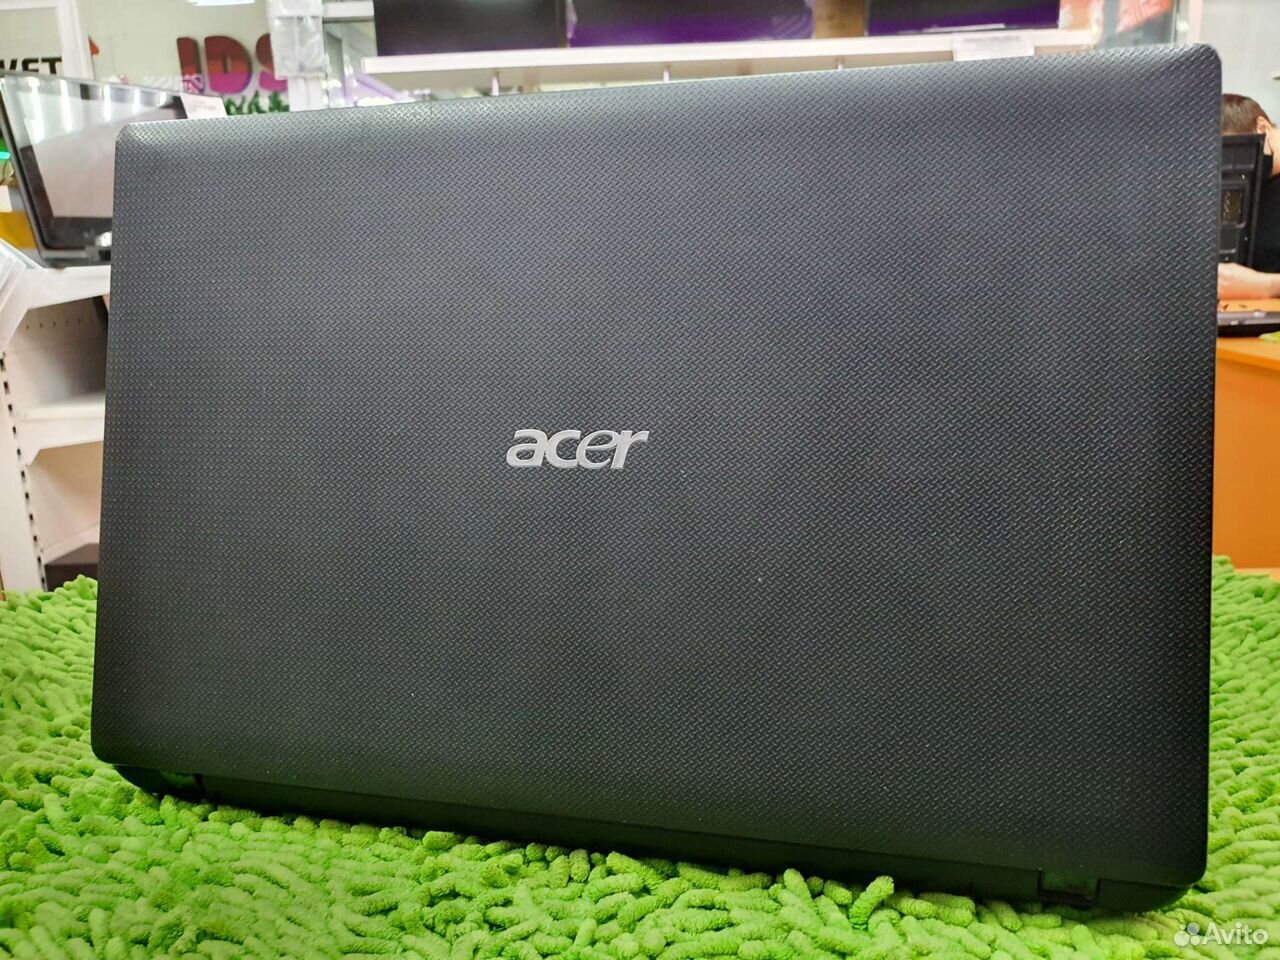 Ноутбук Acer/i7-2630QM/4gb/Nvidia gt540m/640gb 89635499080 купить 3